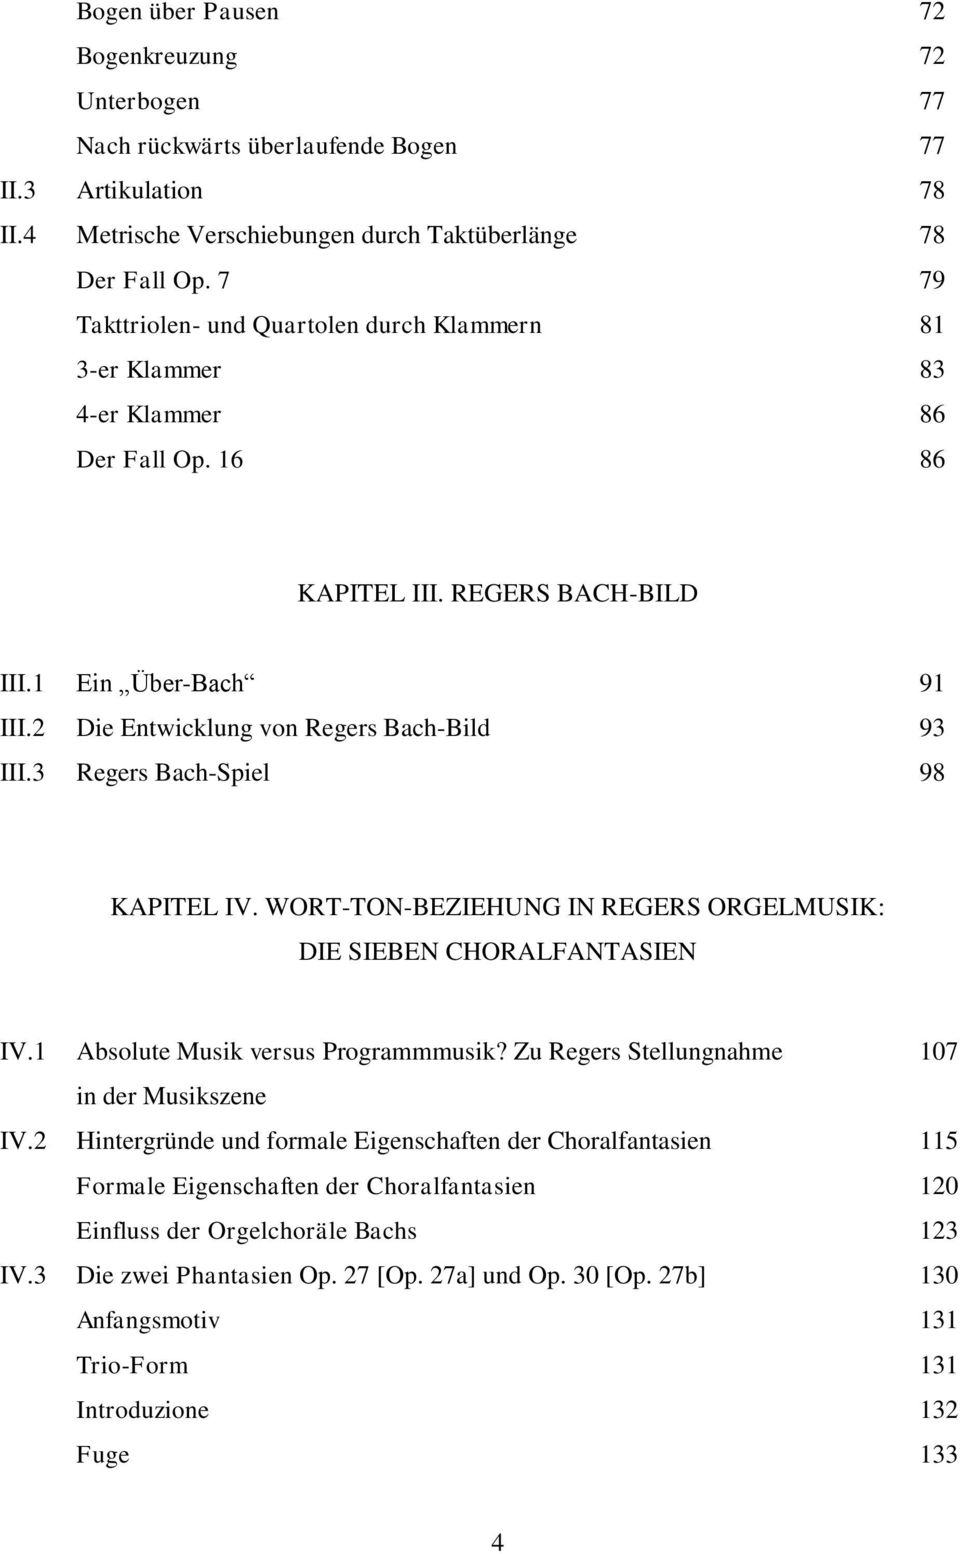 2 Die Entwicklung von Regers Bach-Bild 93 III.3 Regers Bach-Spiel 98 KAPITEL IV. WORT-TON-BEZIEHUNG IN REGERS ORGELMUSIK: DIE SIEBEN CHORALFANTASIEN IV.1 Absolute Musik versus Programmmusik?